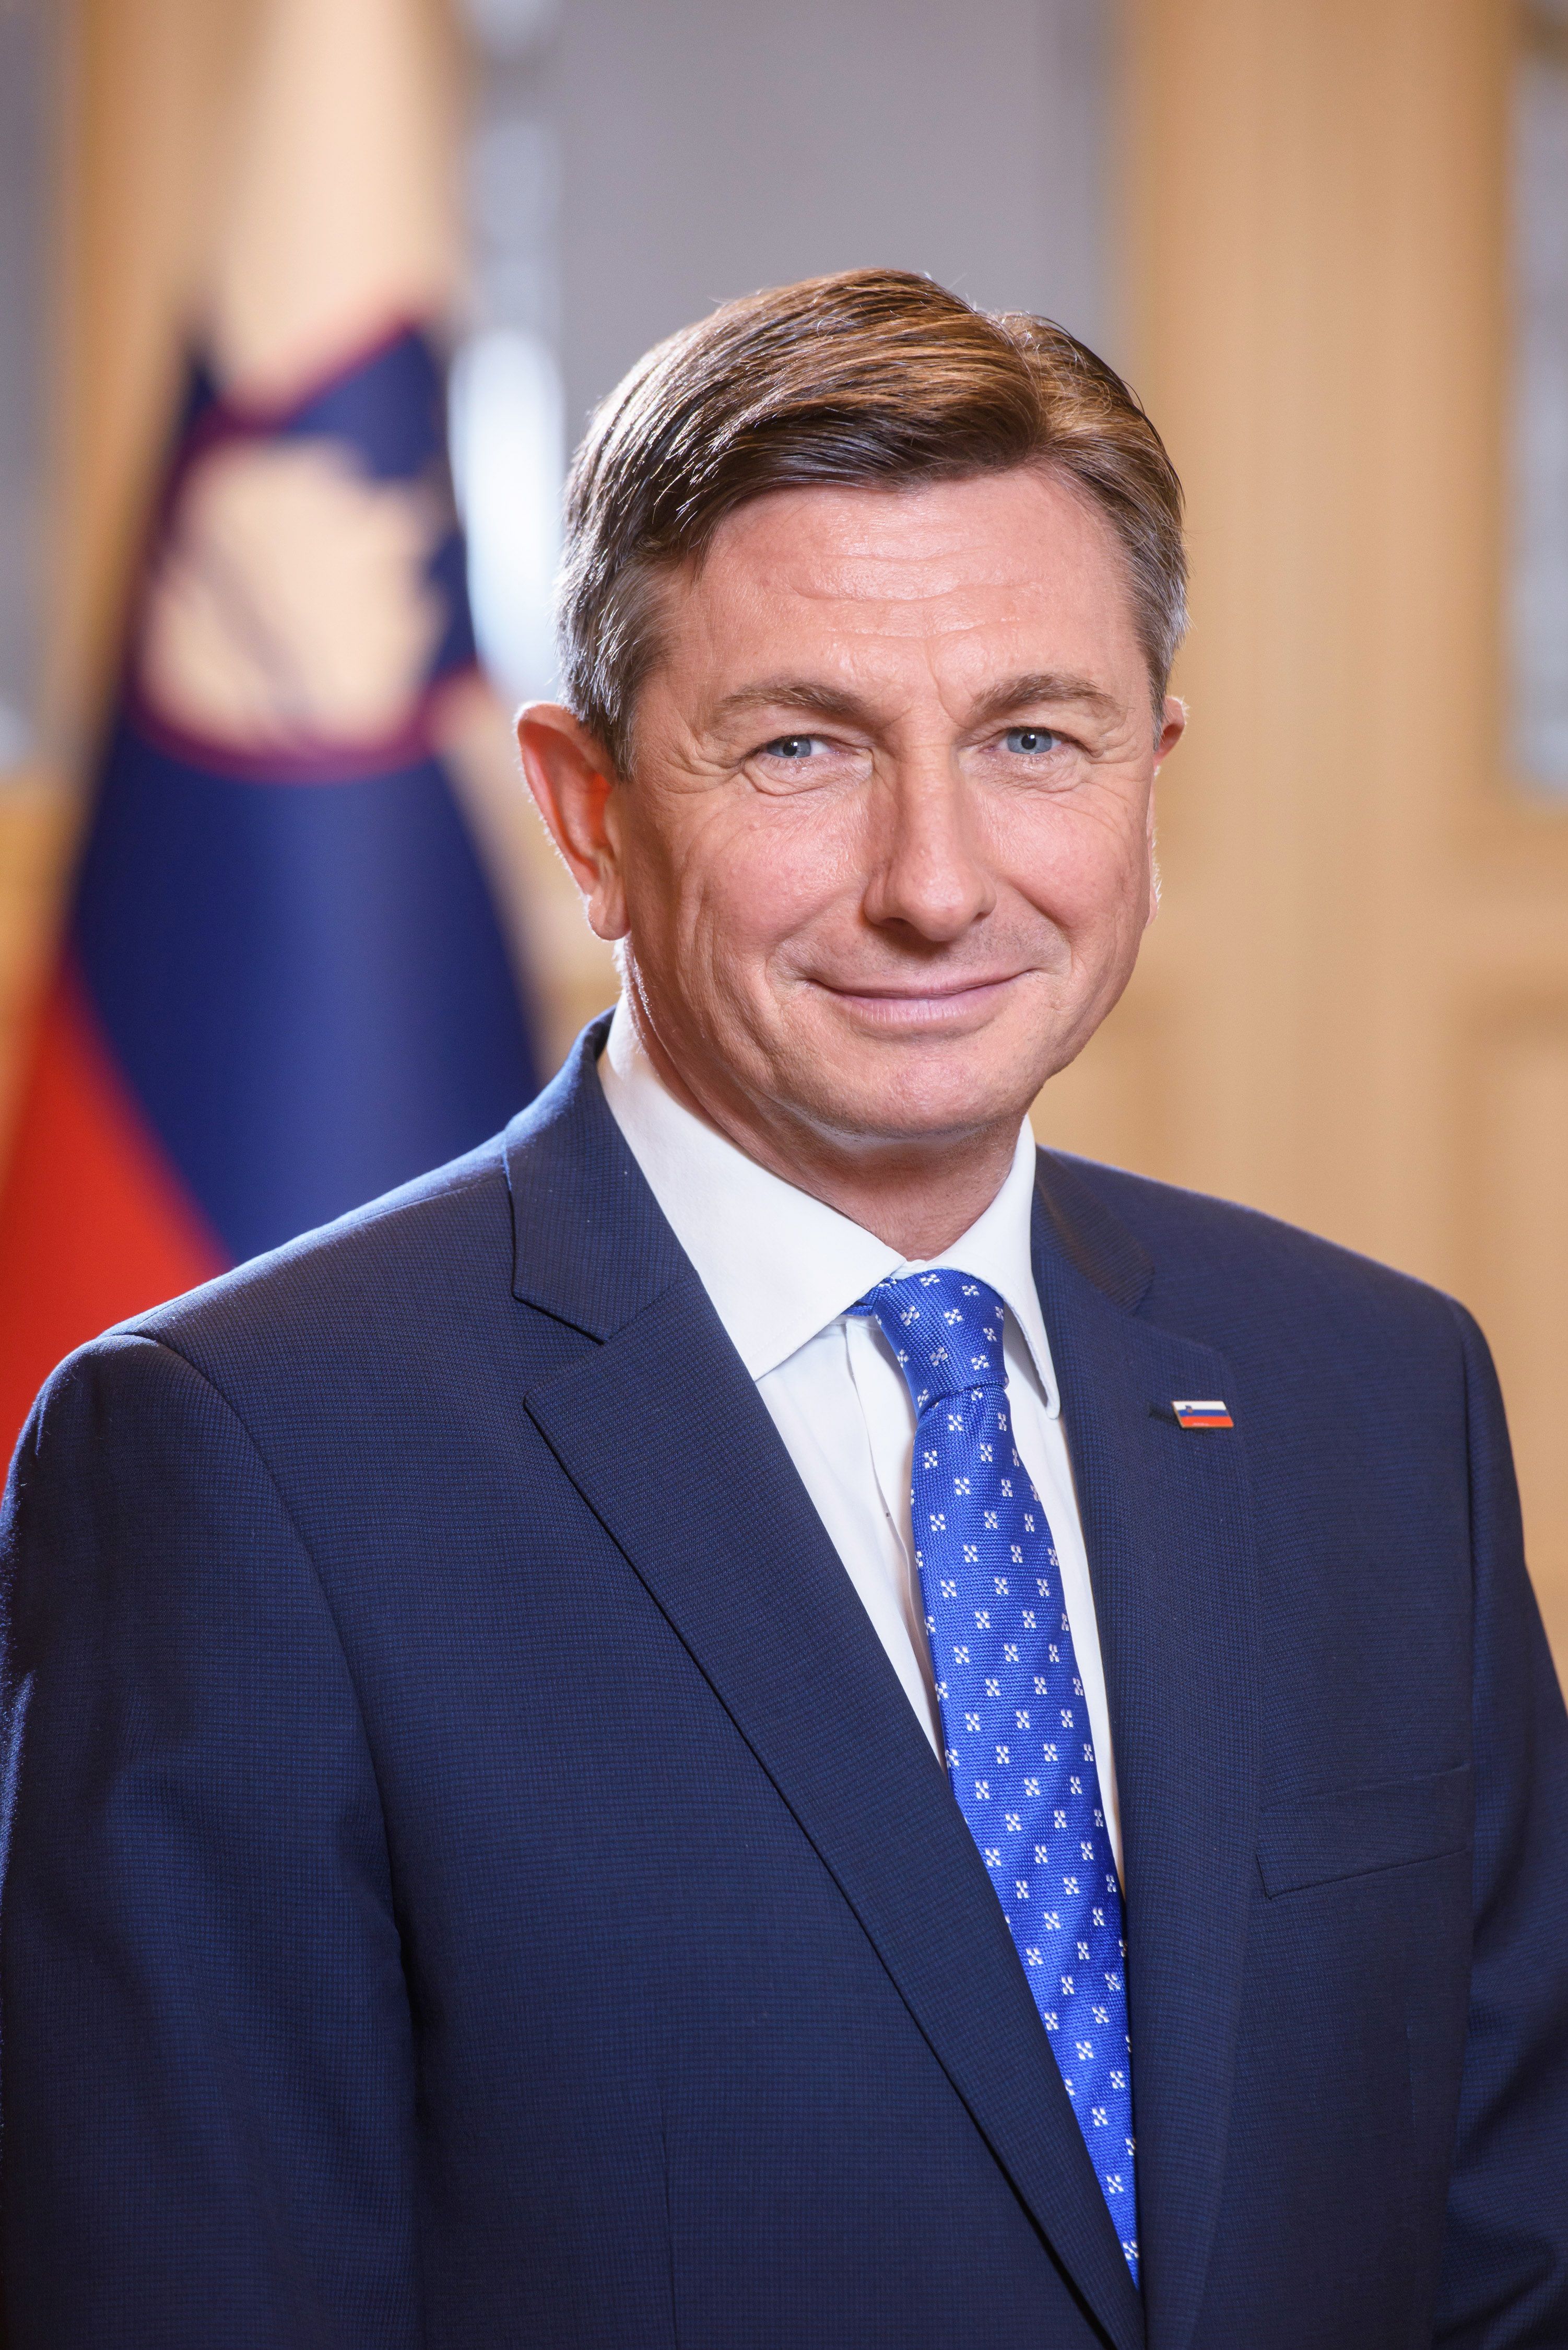 Predsednik Republike Slovenije Borut Pahor je častni pokrovitelj dogodkov ob 30. obletnici Dobe.